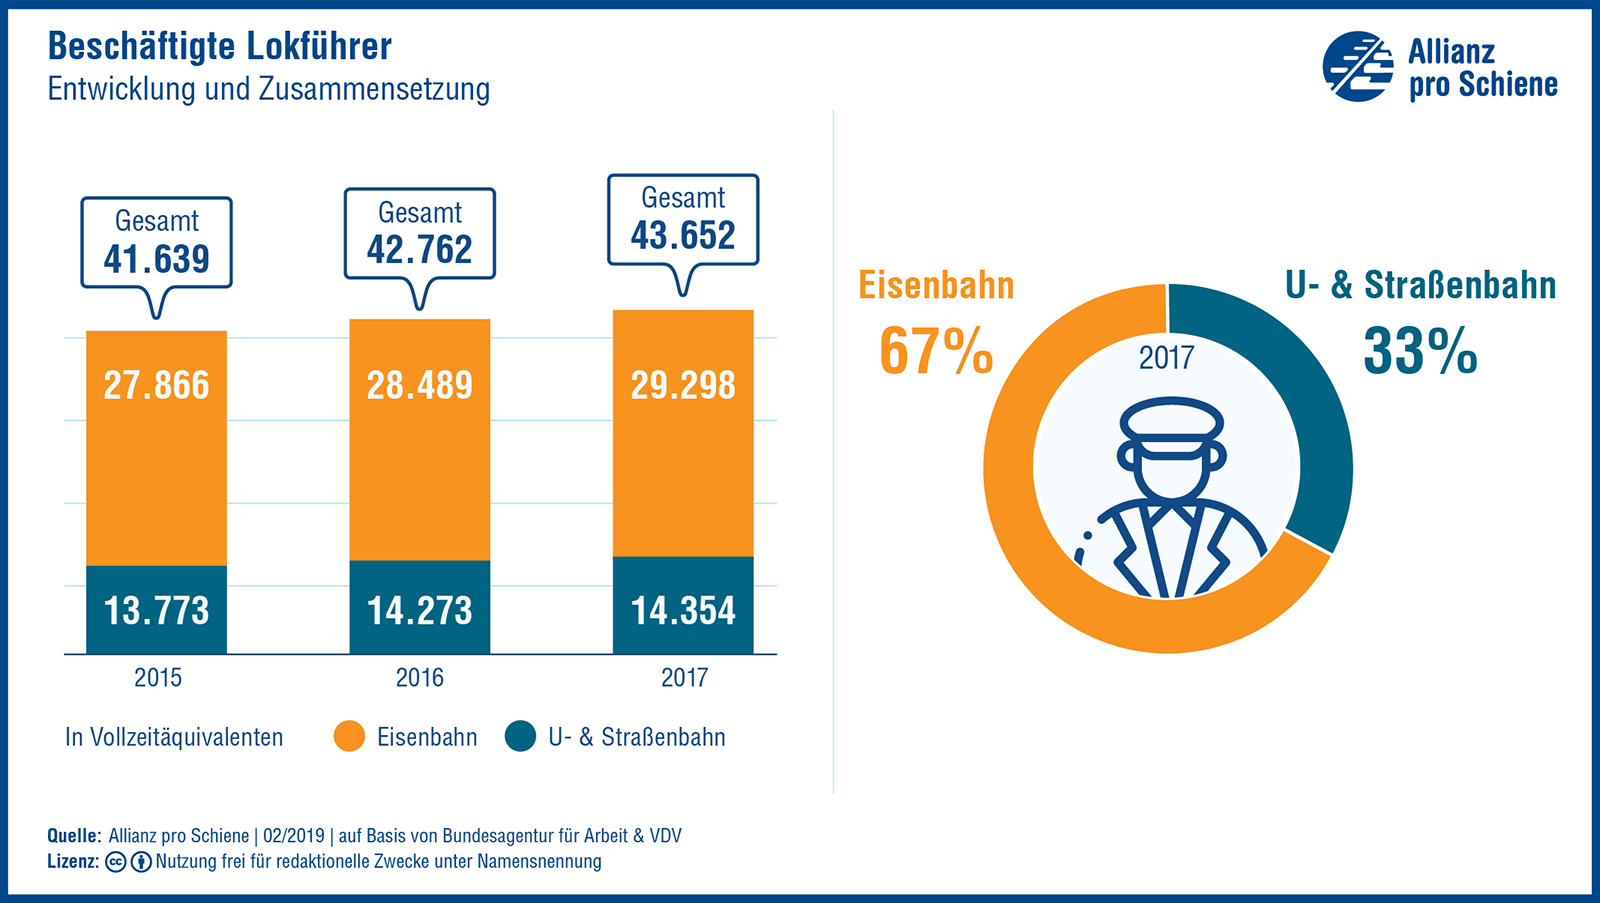 Beschäftigte Lokführer: Entwicklung und Zusammensetzung 2015-2017, Eisenbahn, U-Bahn